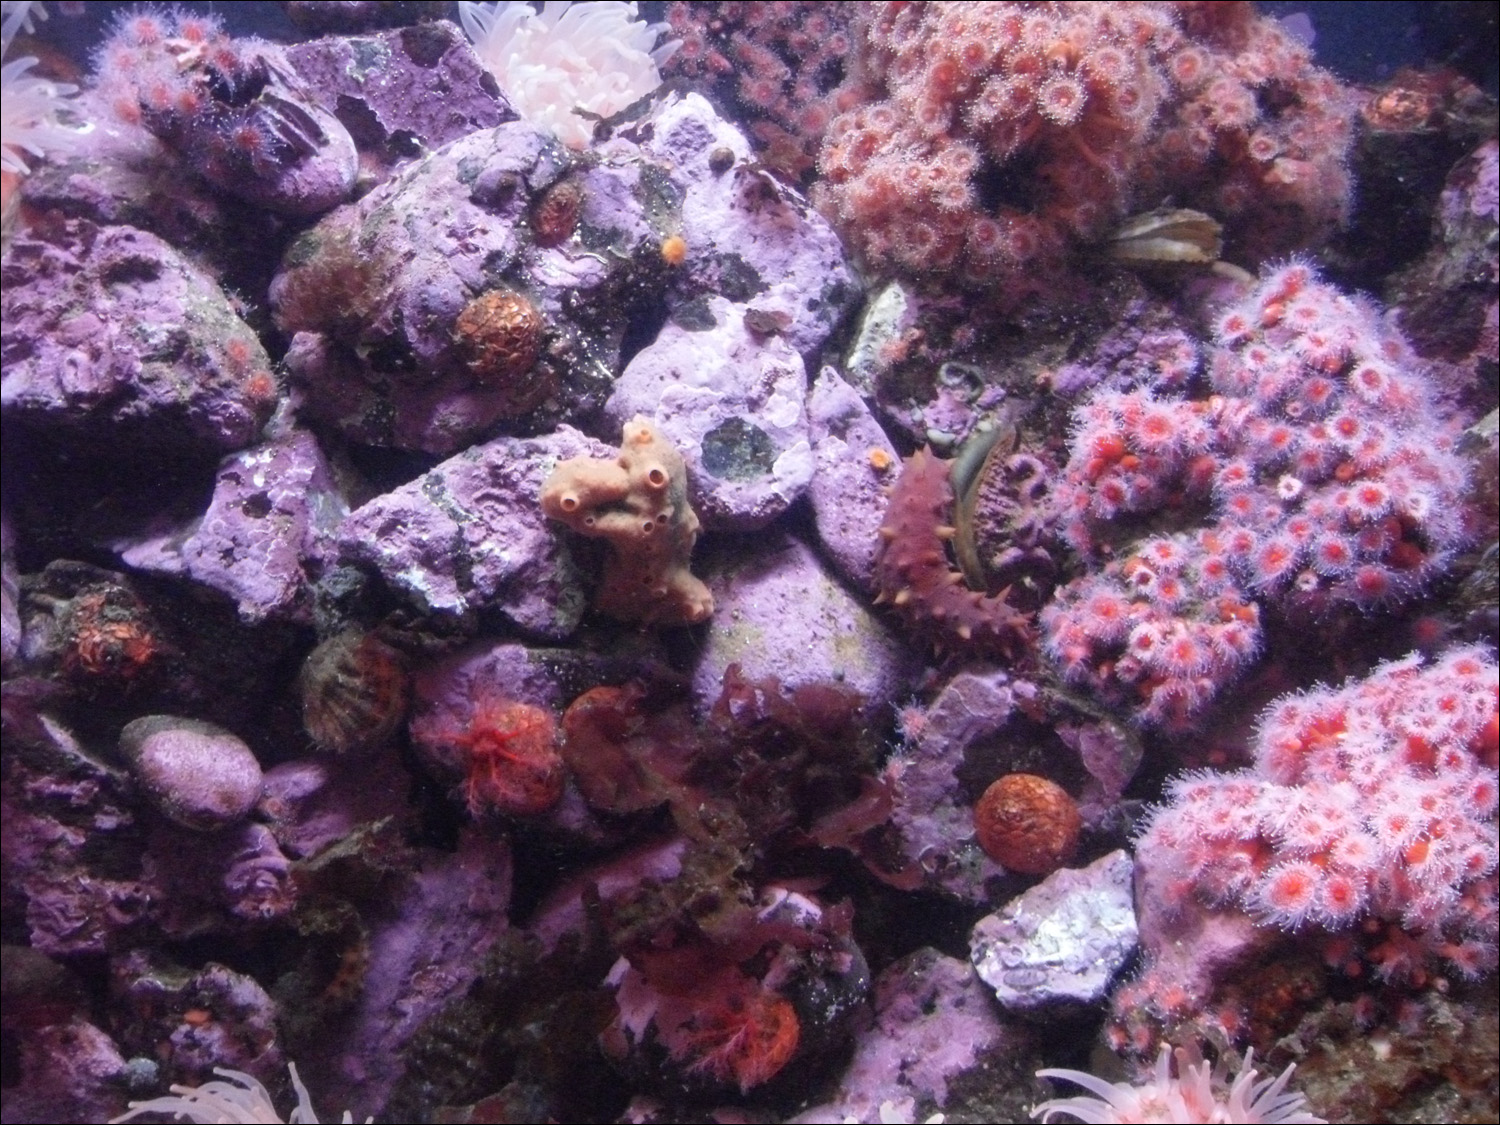 Tacoma, WA-Point Defiance Zoo & Aquarium-anemones in aquarium